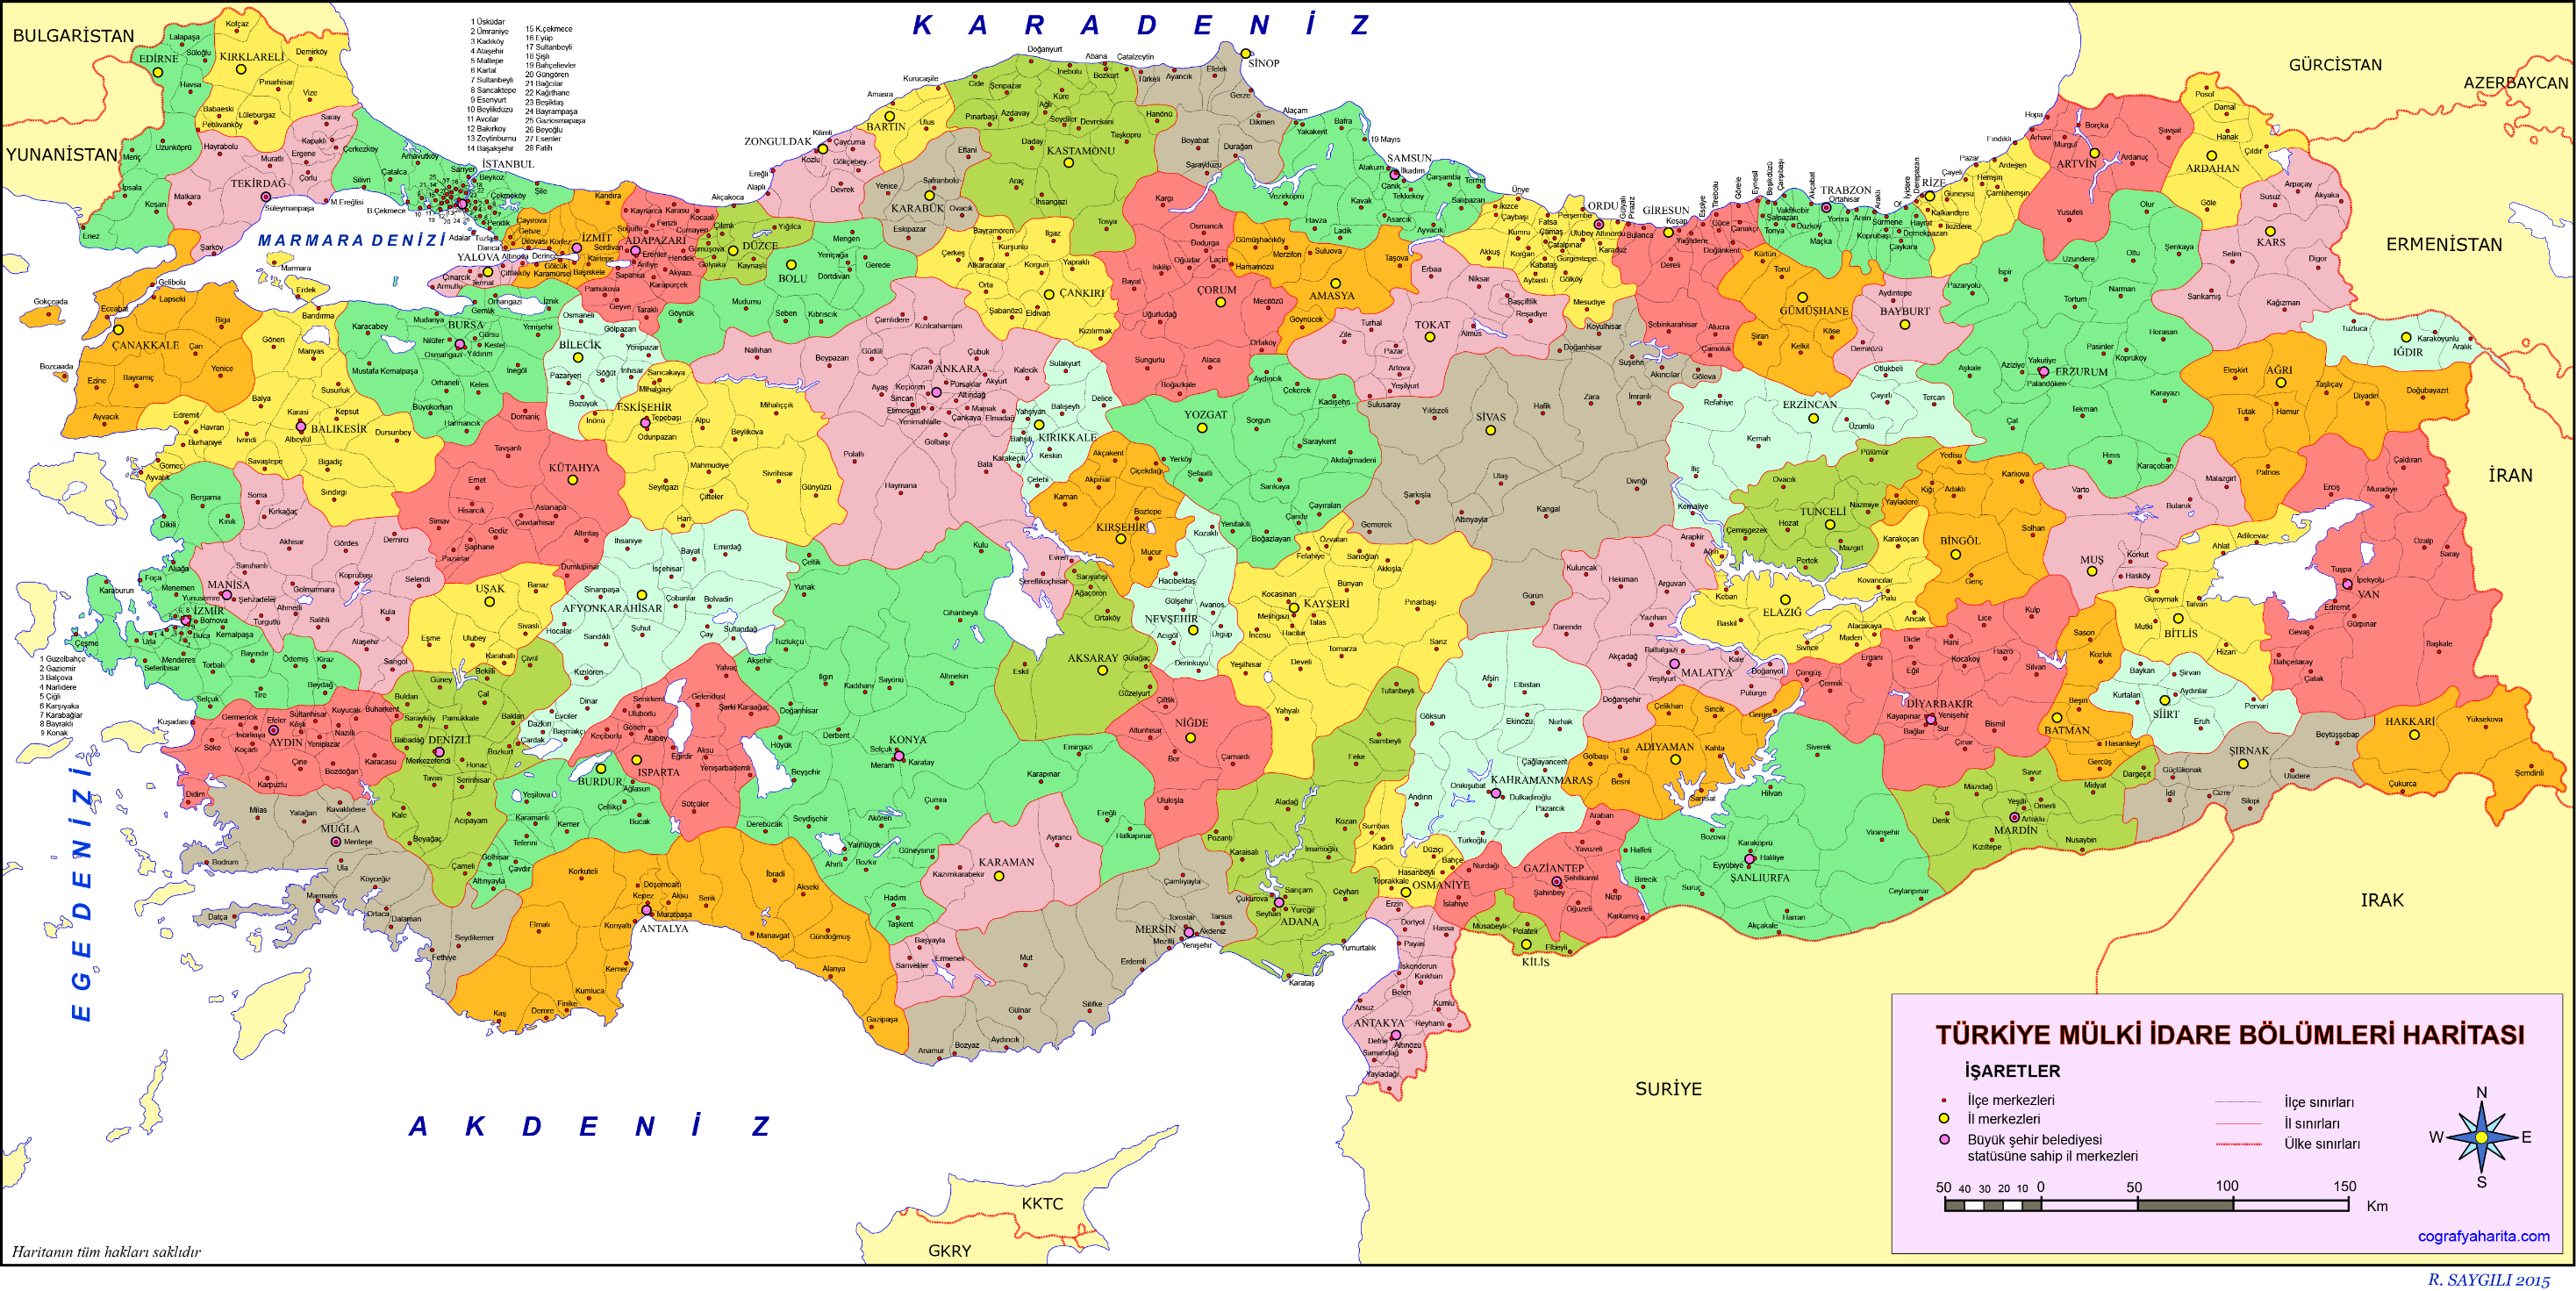 GAP Turizm Gelişim Bölgesi Adıyaman, Batman, Diyarbakır, Gaziantep, Kilis,